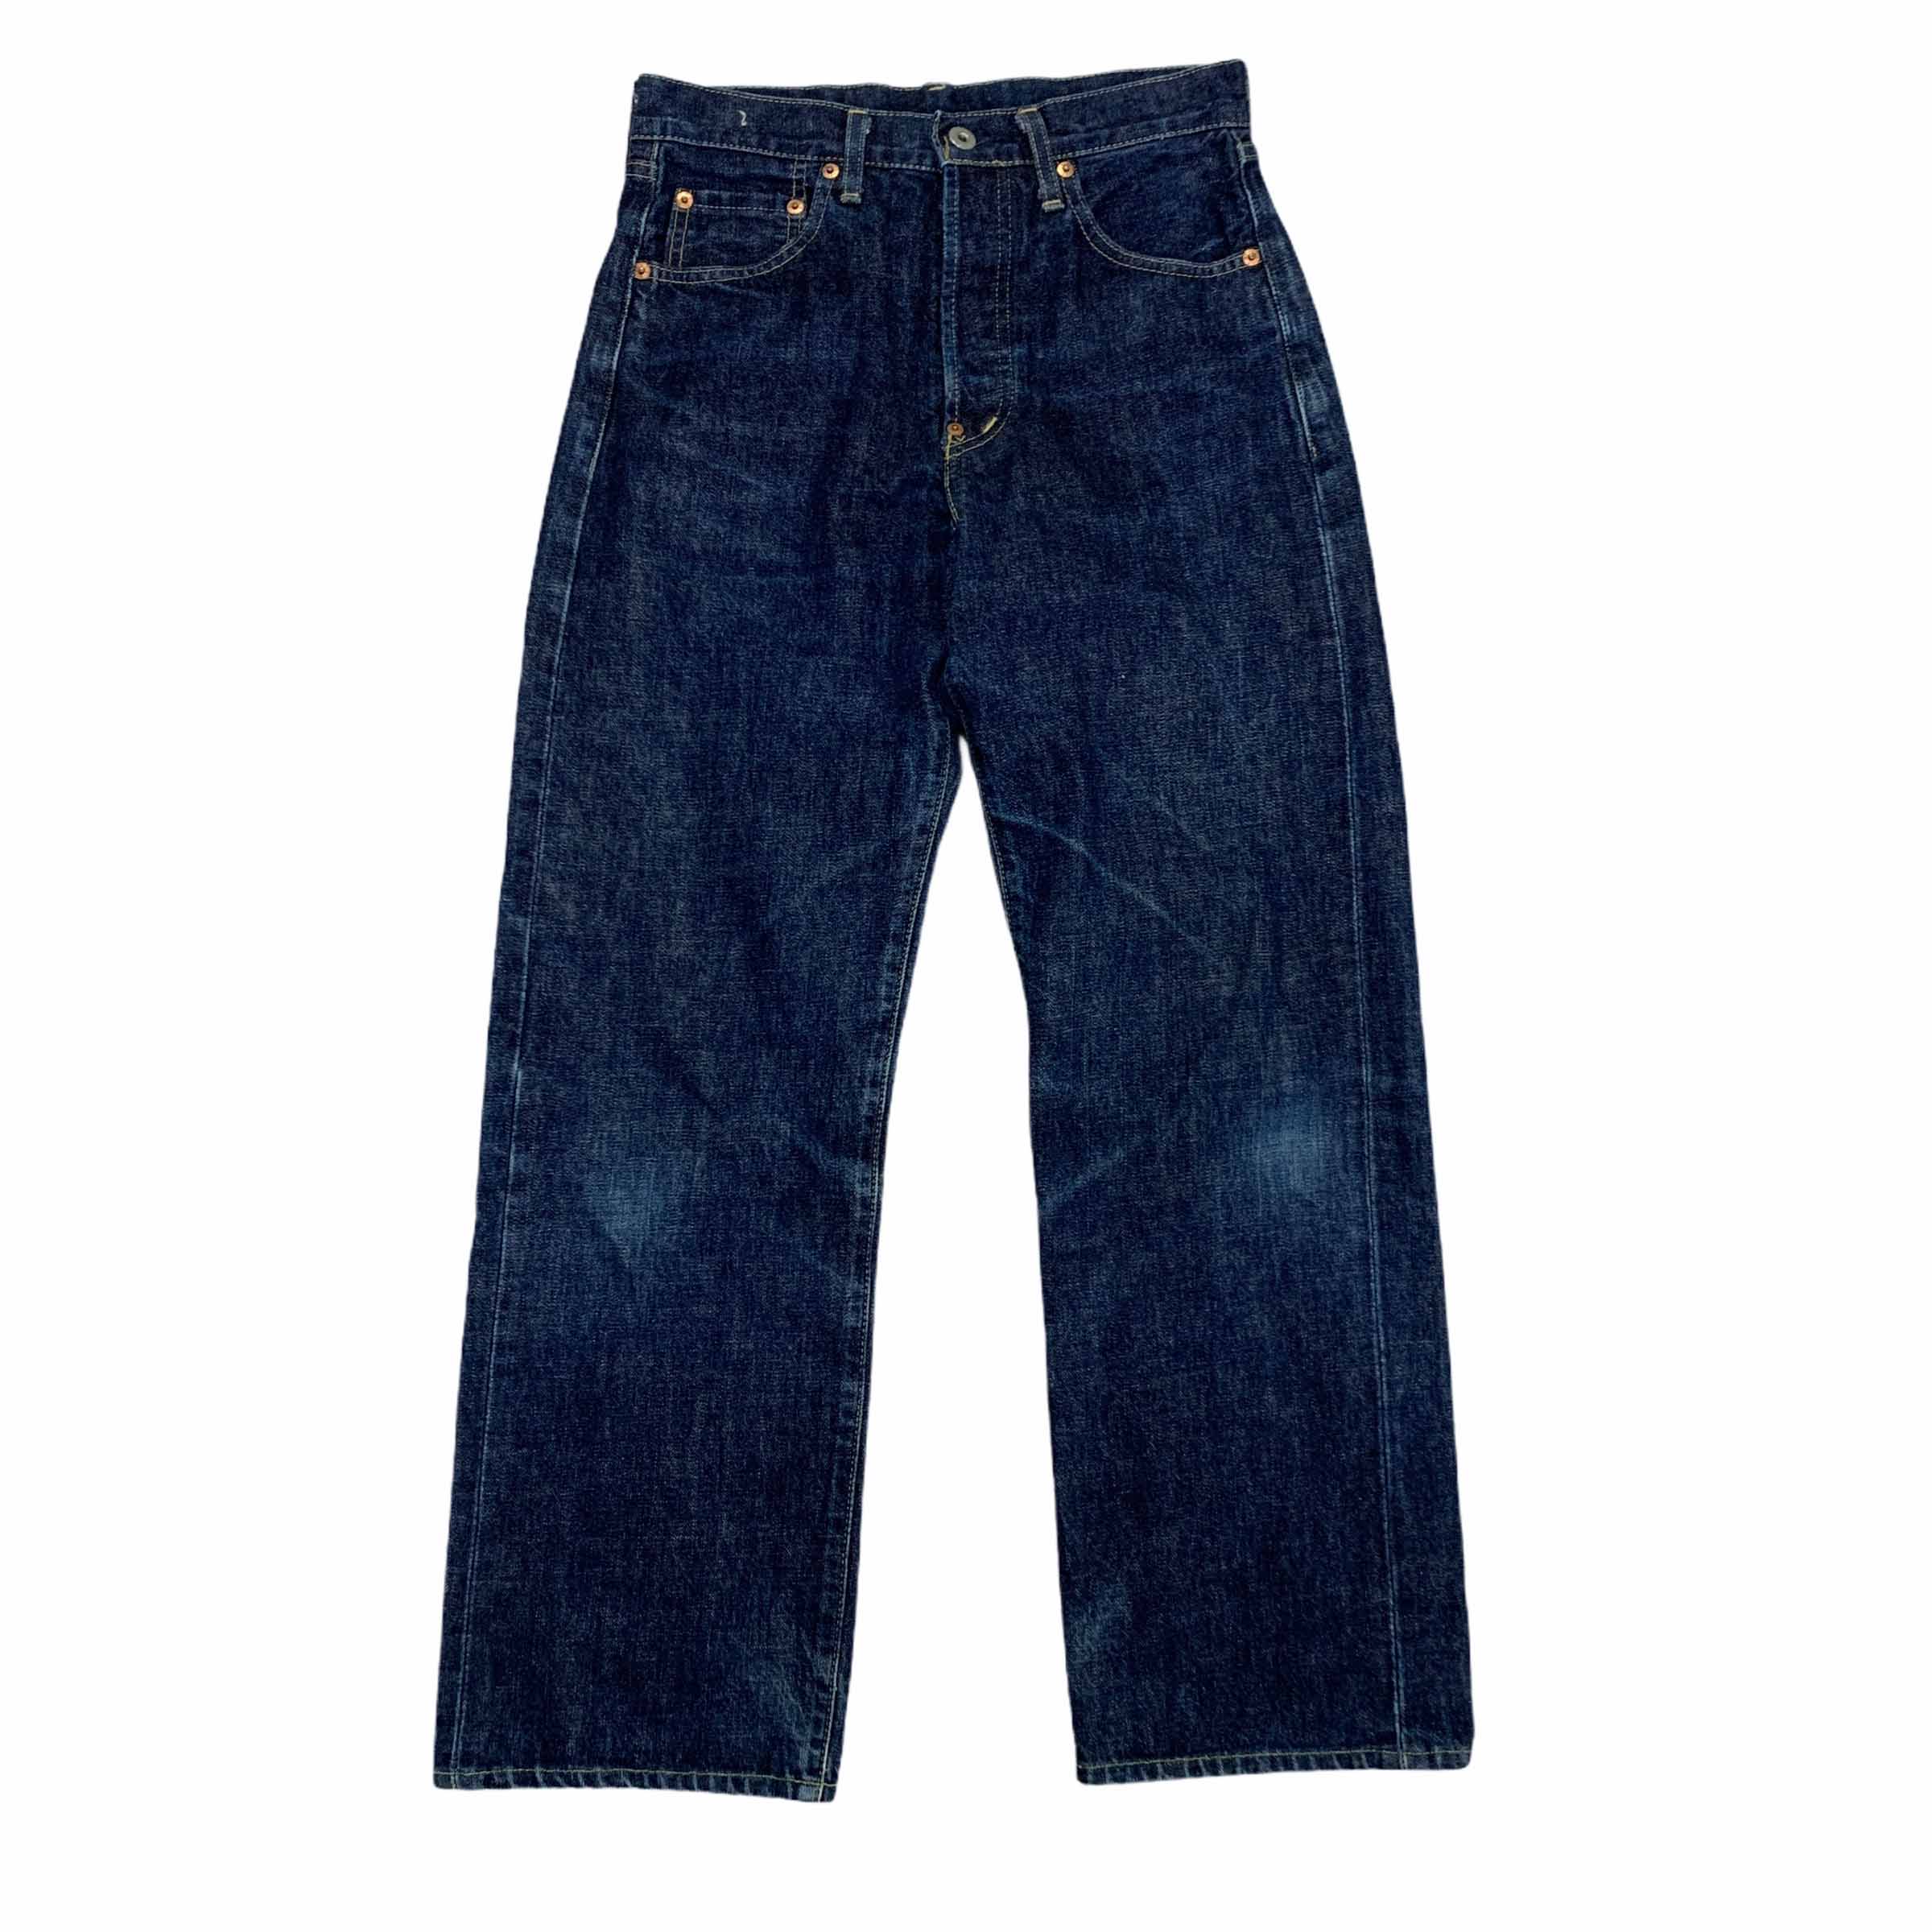 [Levis] (Vintage) 702 Denim Pants - Size 29/36